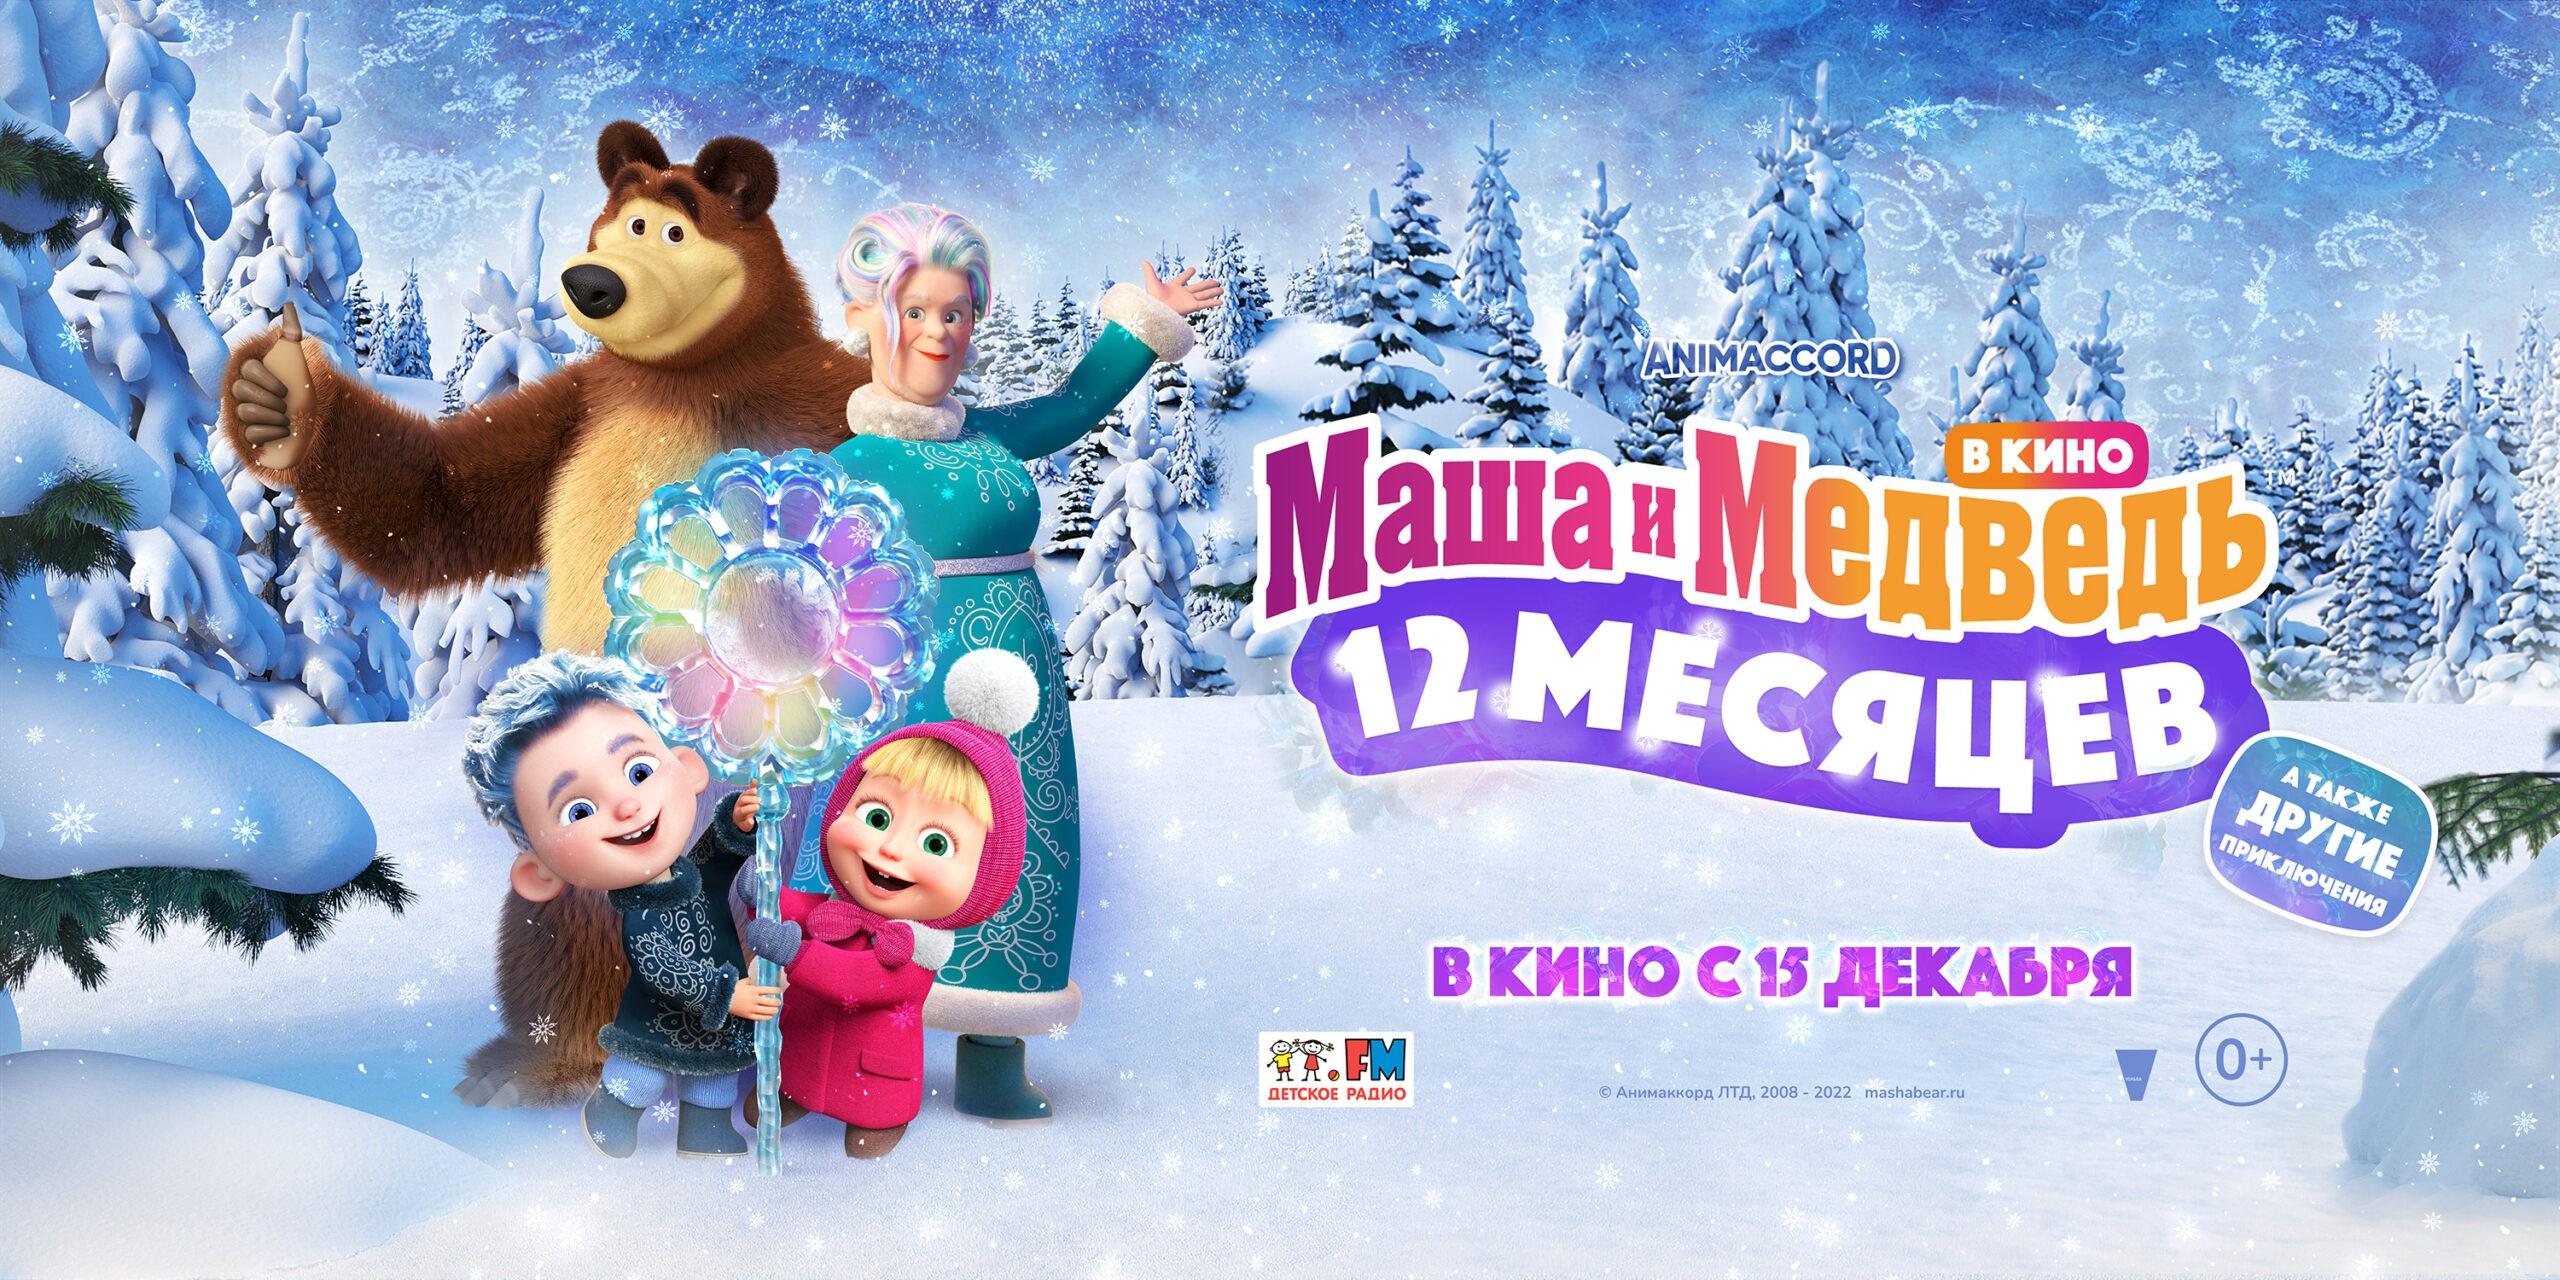 Маша и Медведь в кино: 12 месяцев 0+